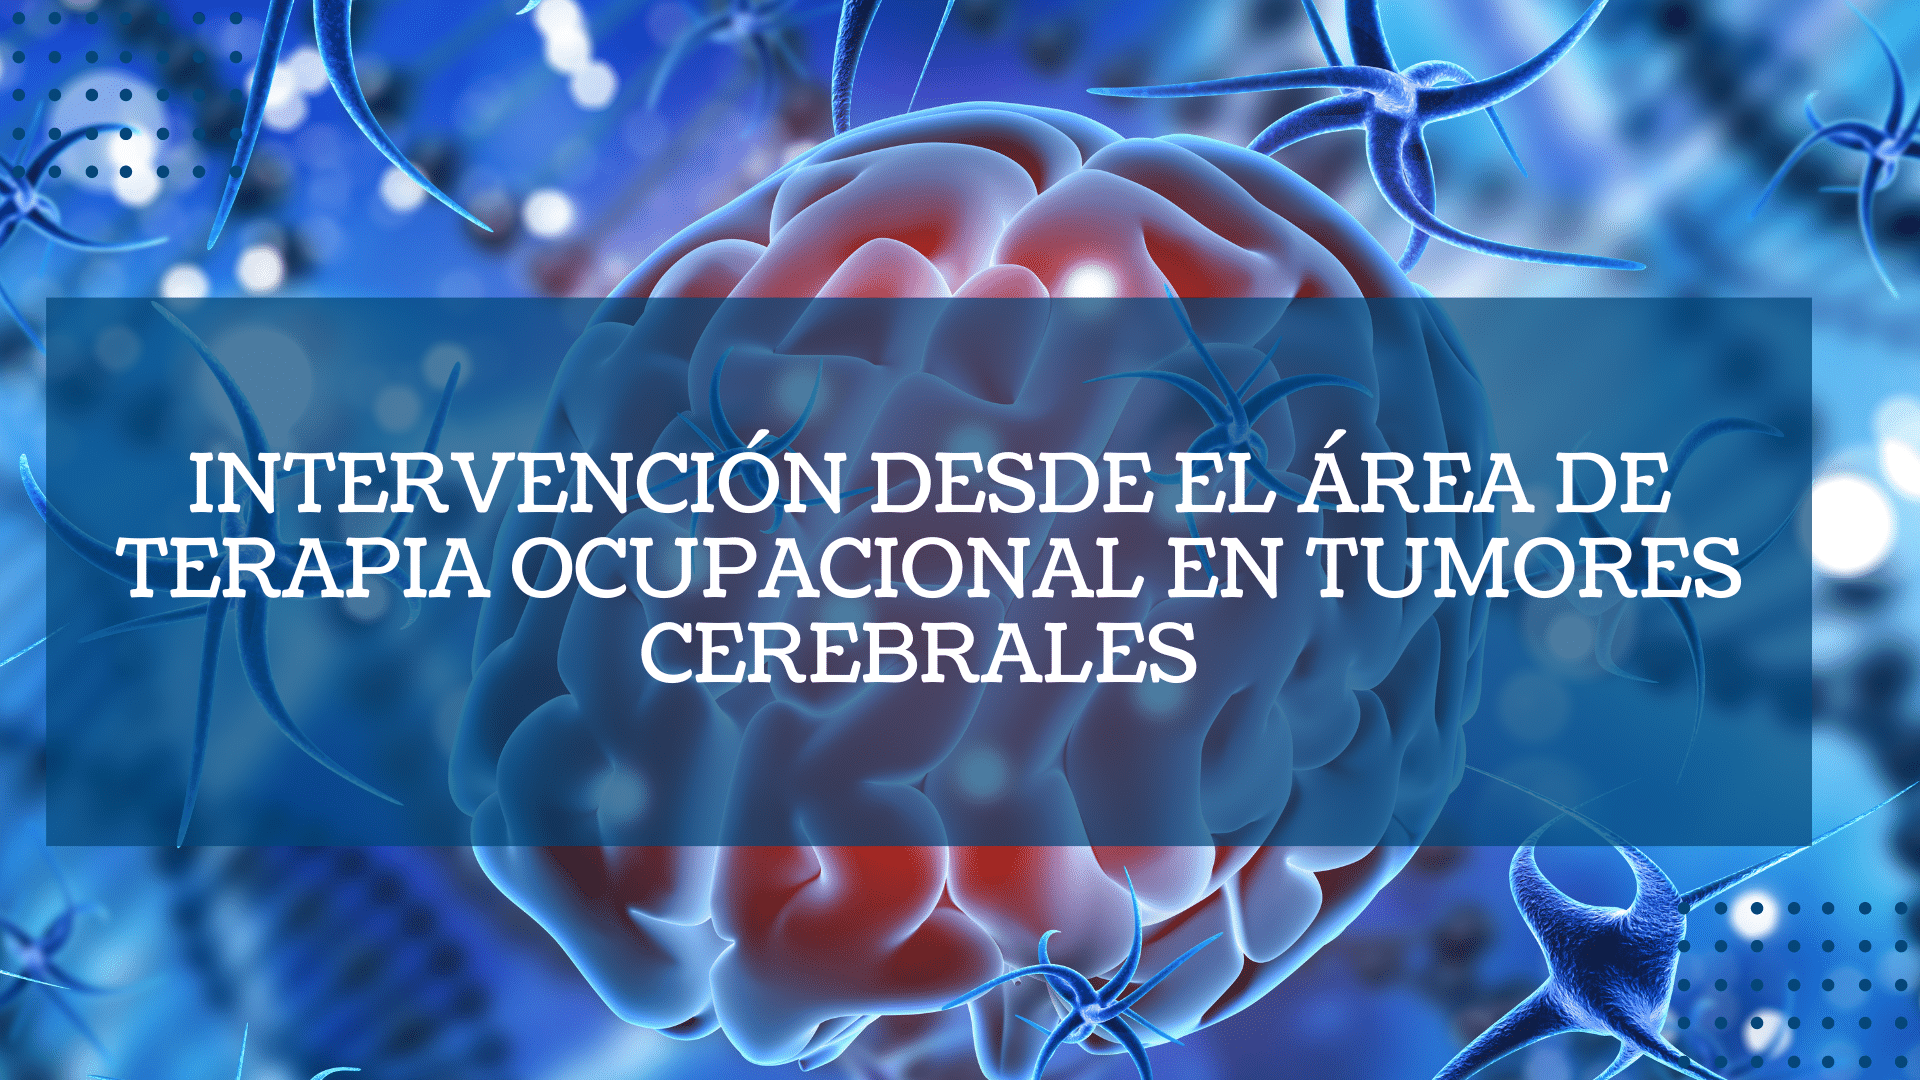 Intervencion desde el area de terapia ocupacional en tumores cerebrales